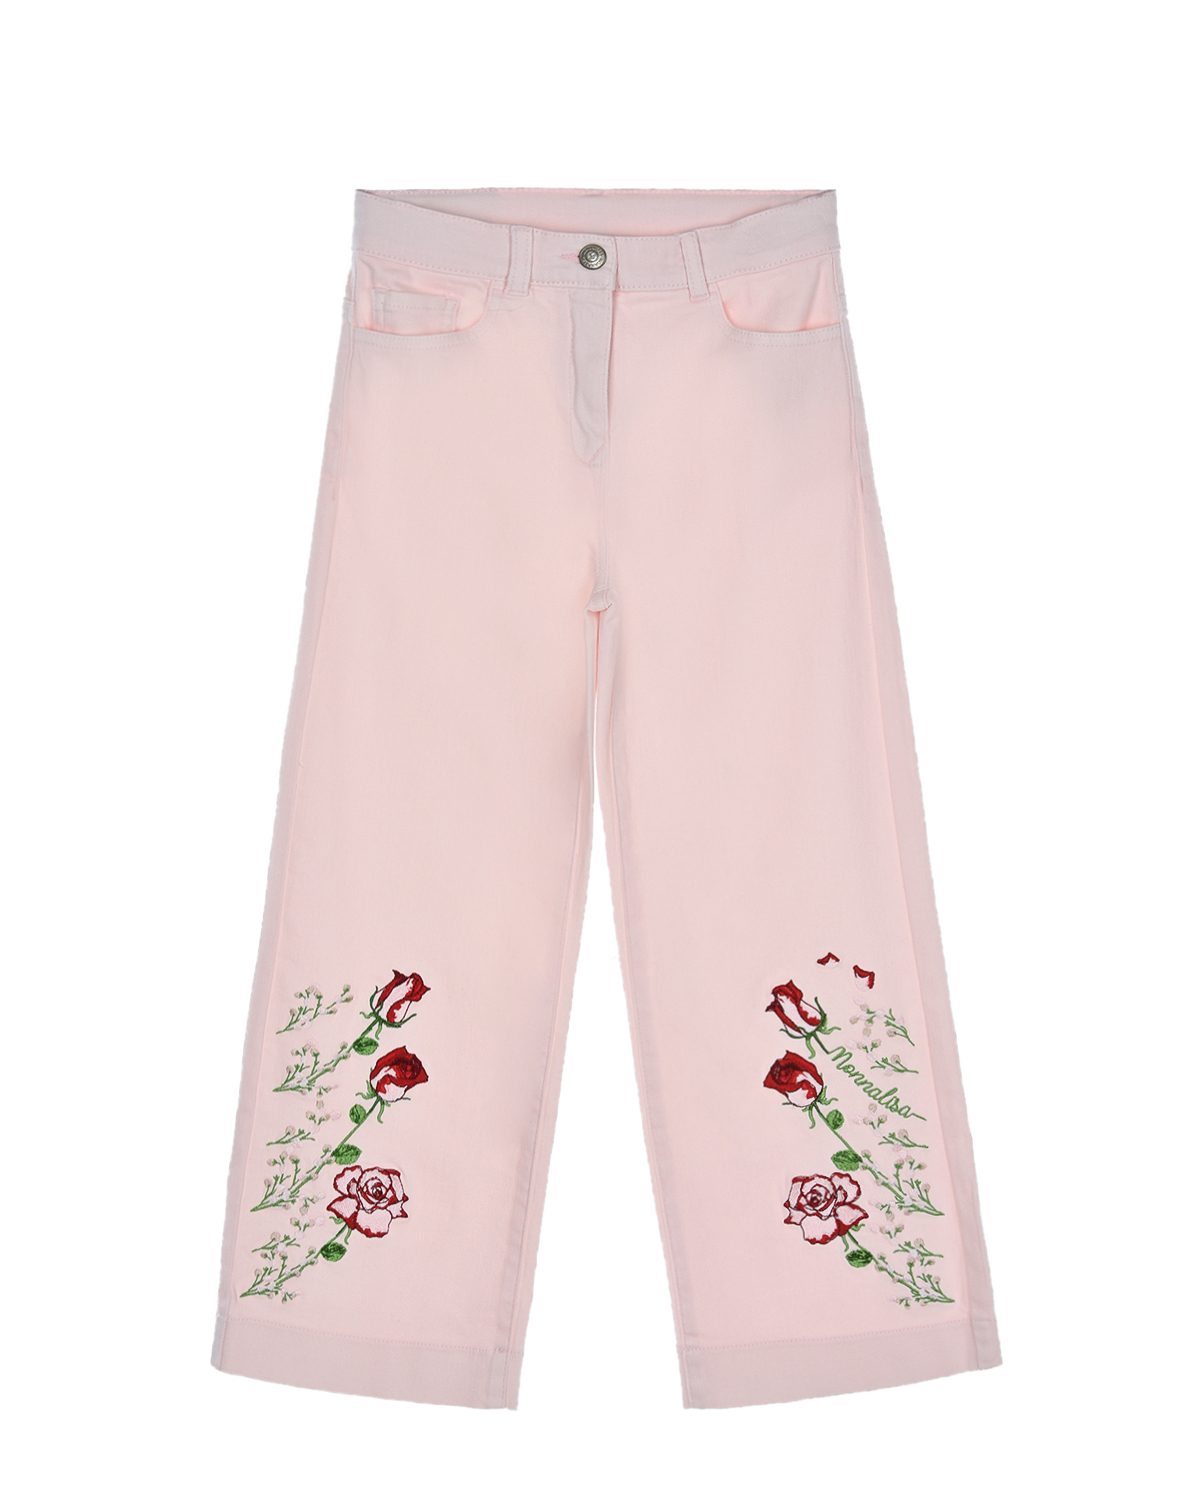 Розовые брюки с вышивкой "розы" Monnalisa детские, размер 116, цвет розовый - фото 1